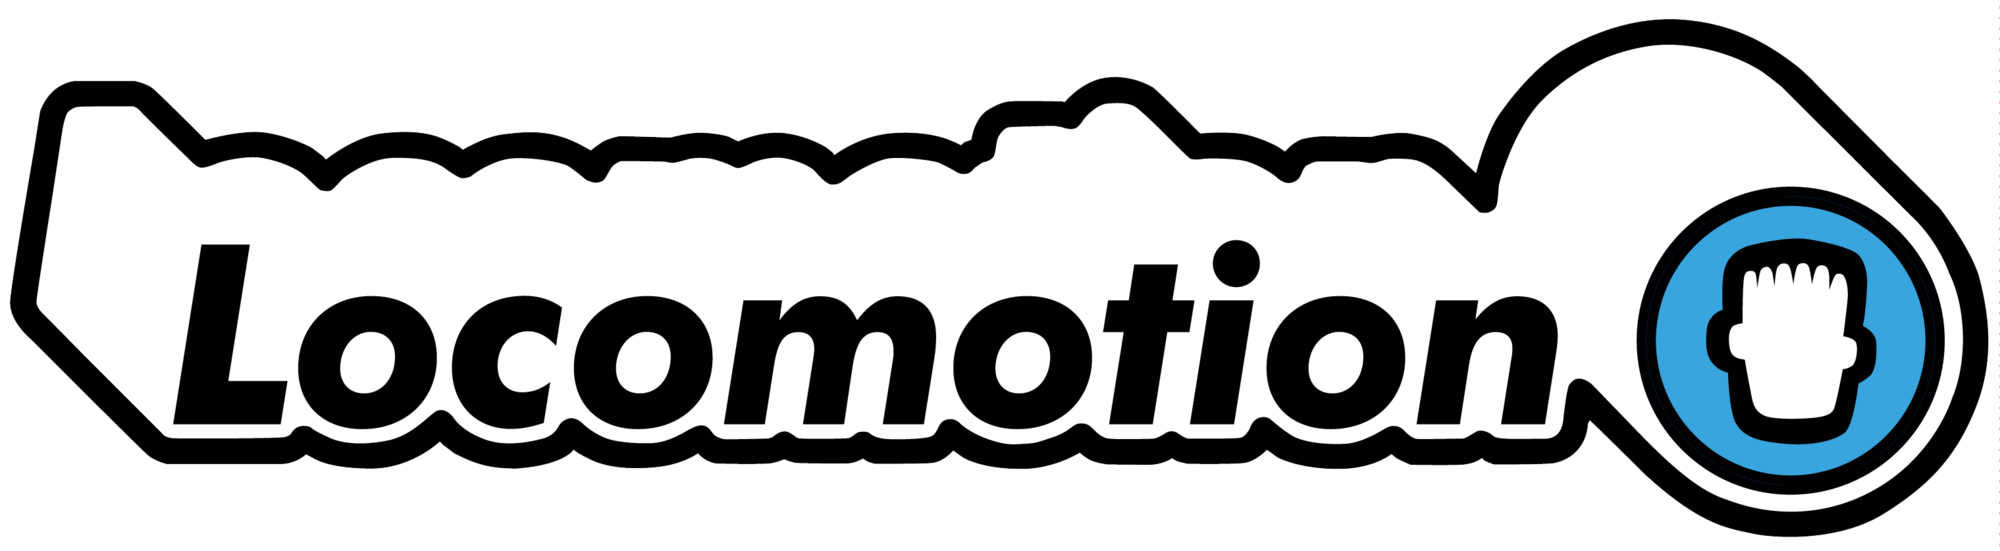 Locomotion Logo - Chronoteve (Ringia) | Dream Logos Wiki | FANDOM powered by Wikia